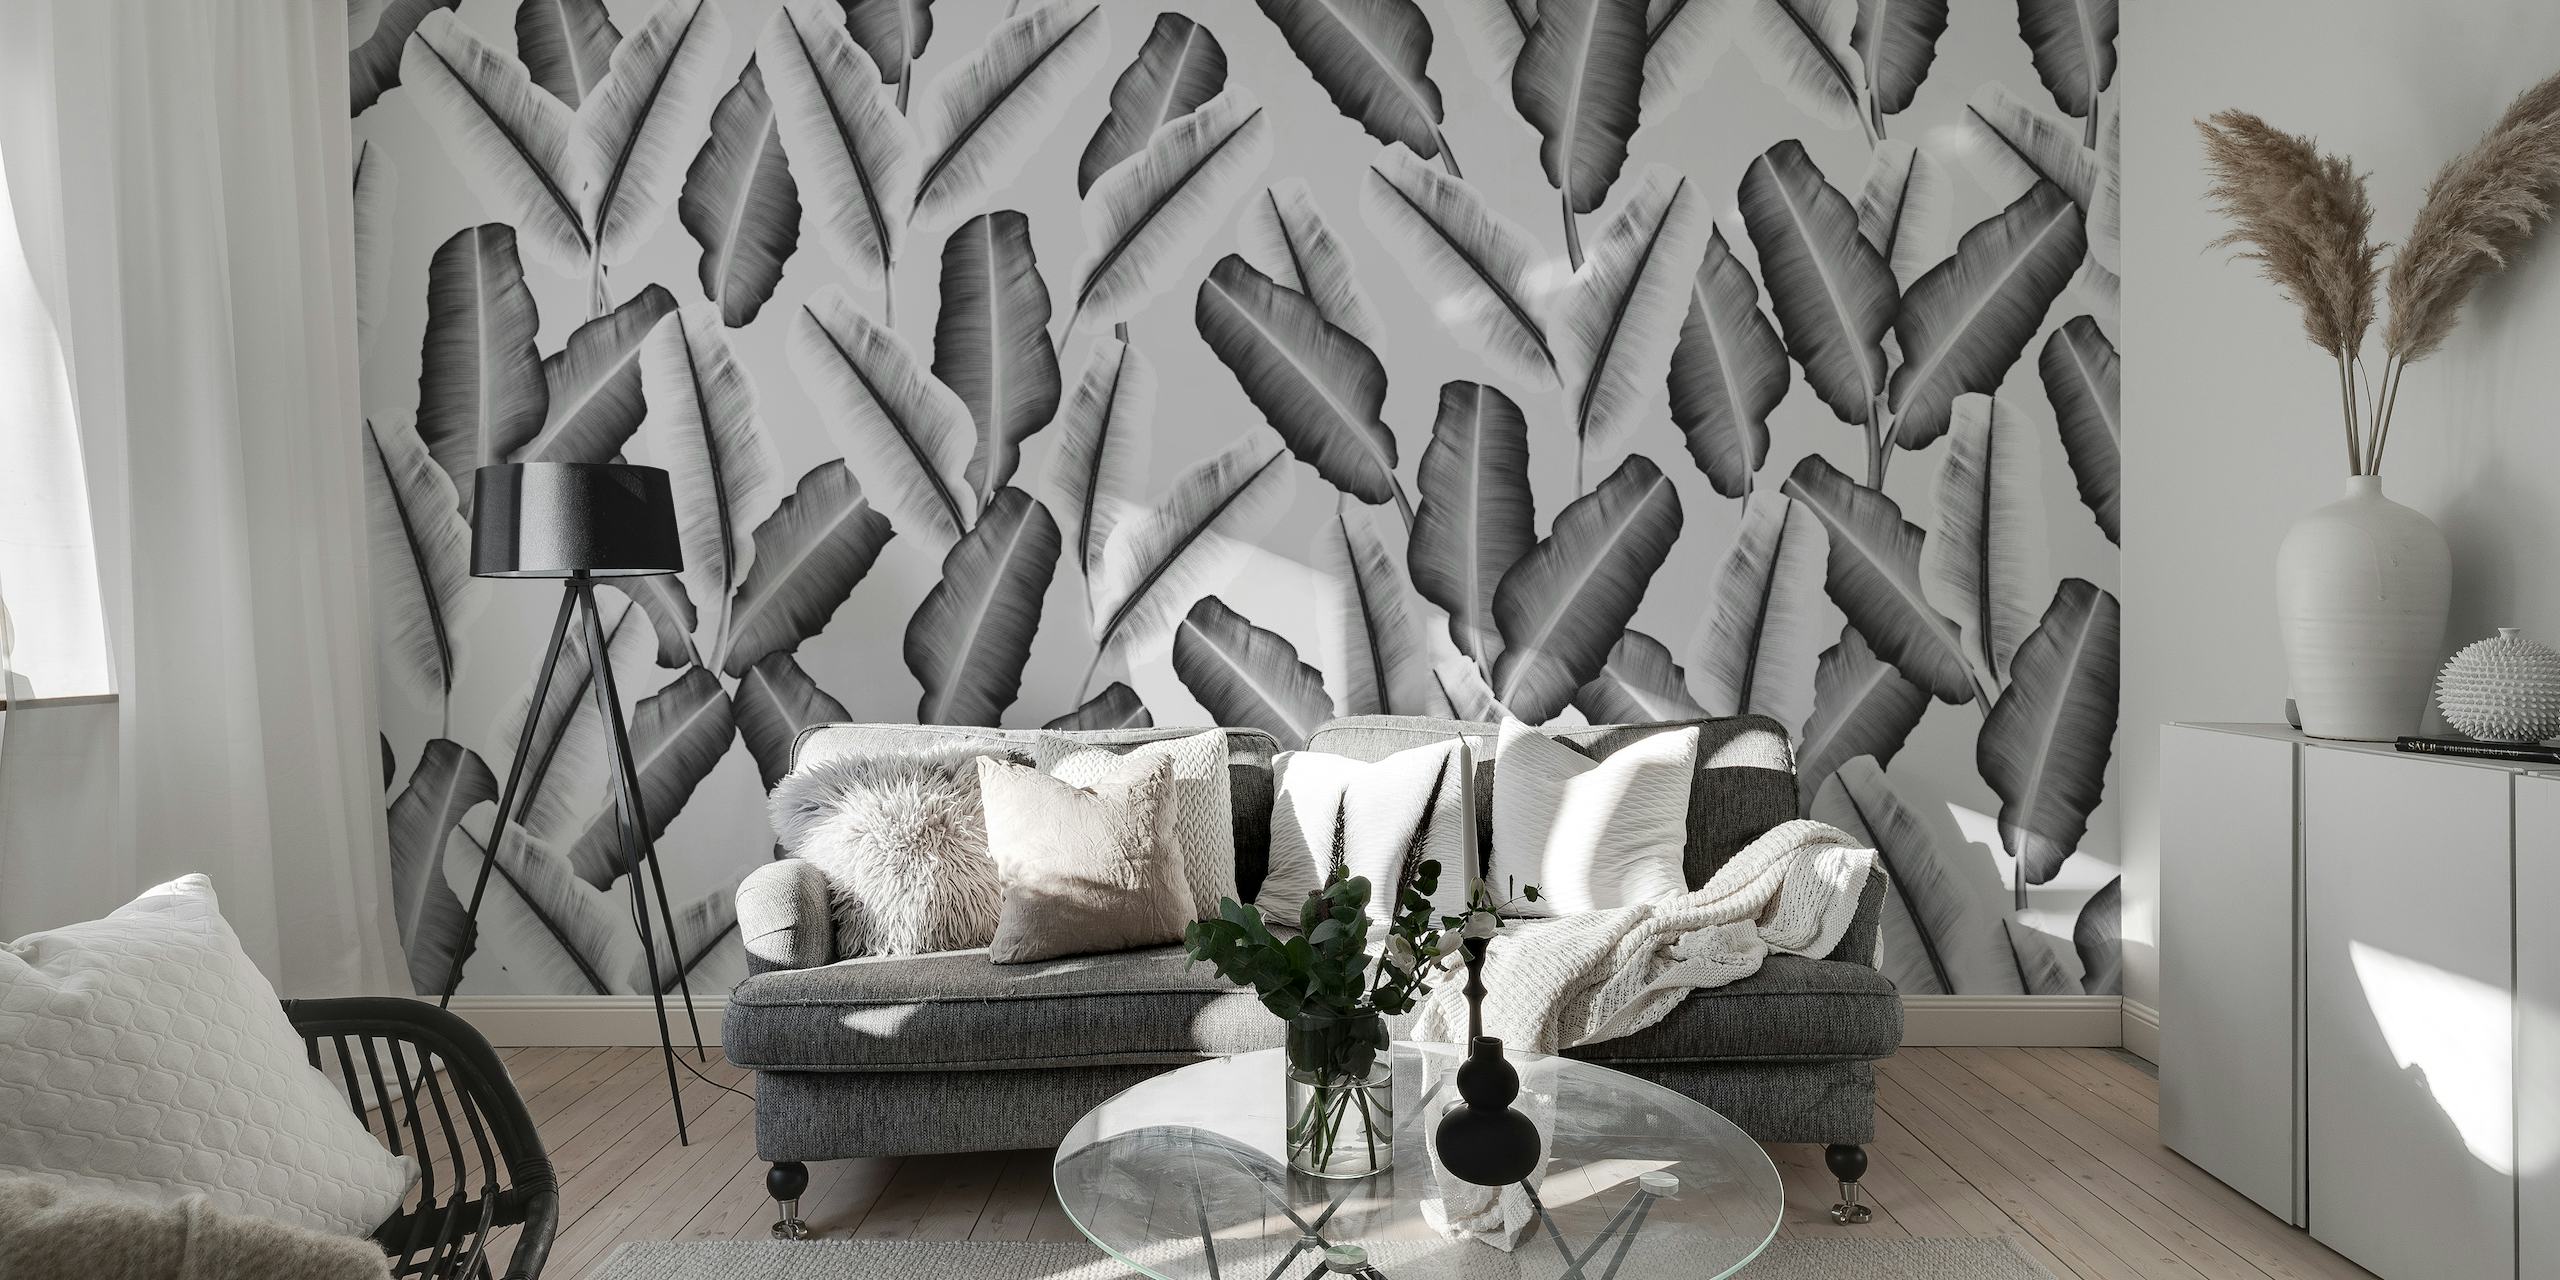 Papier peint mural élégant à sticker de feuilles de bananier tropicales en niveaux de gris